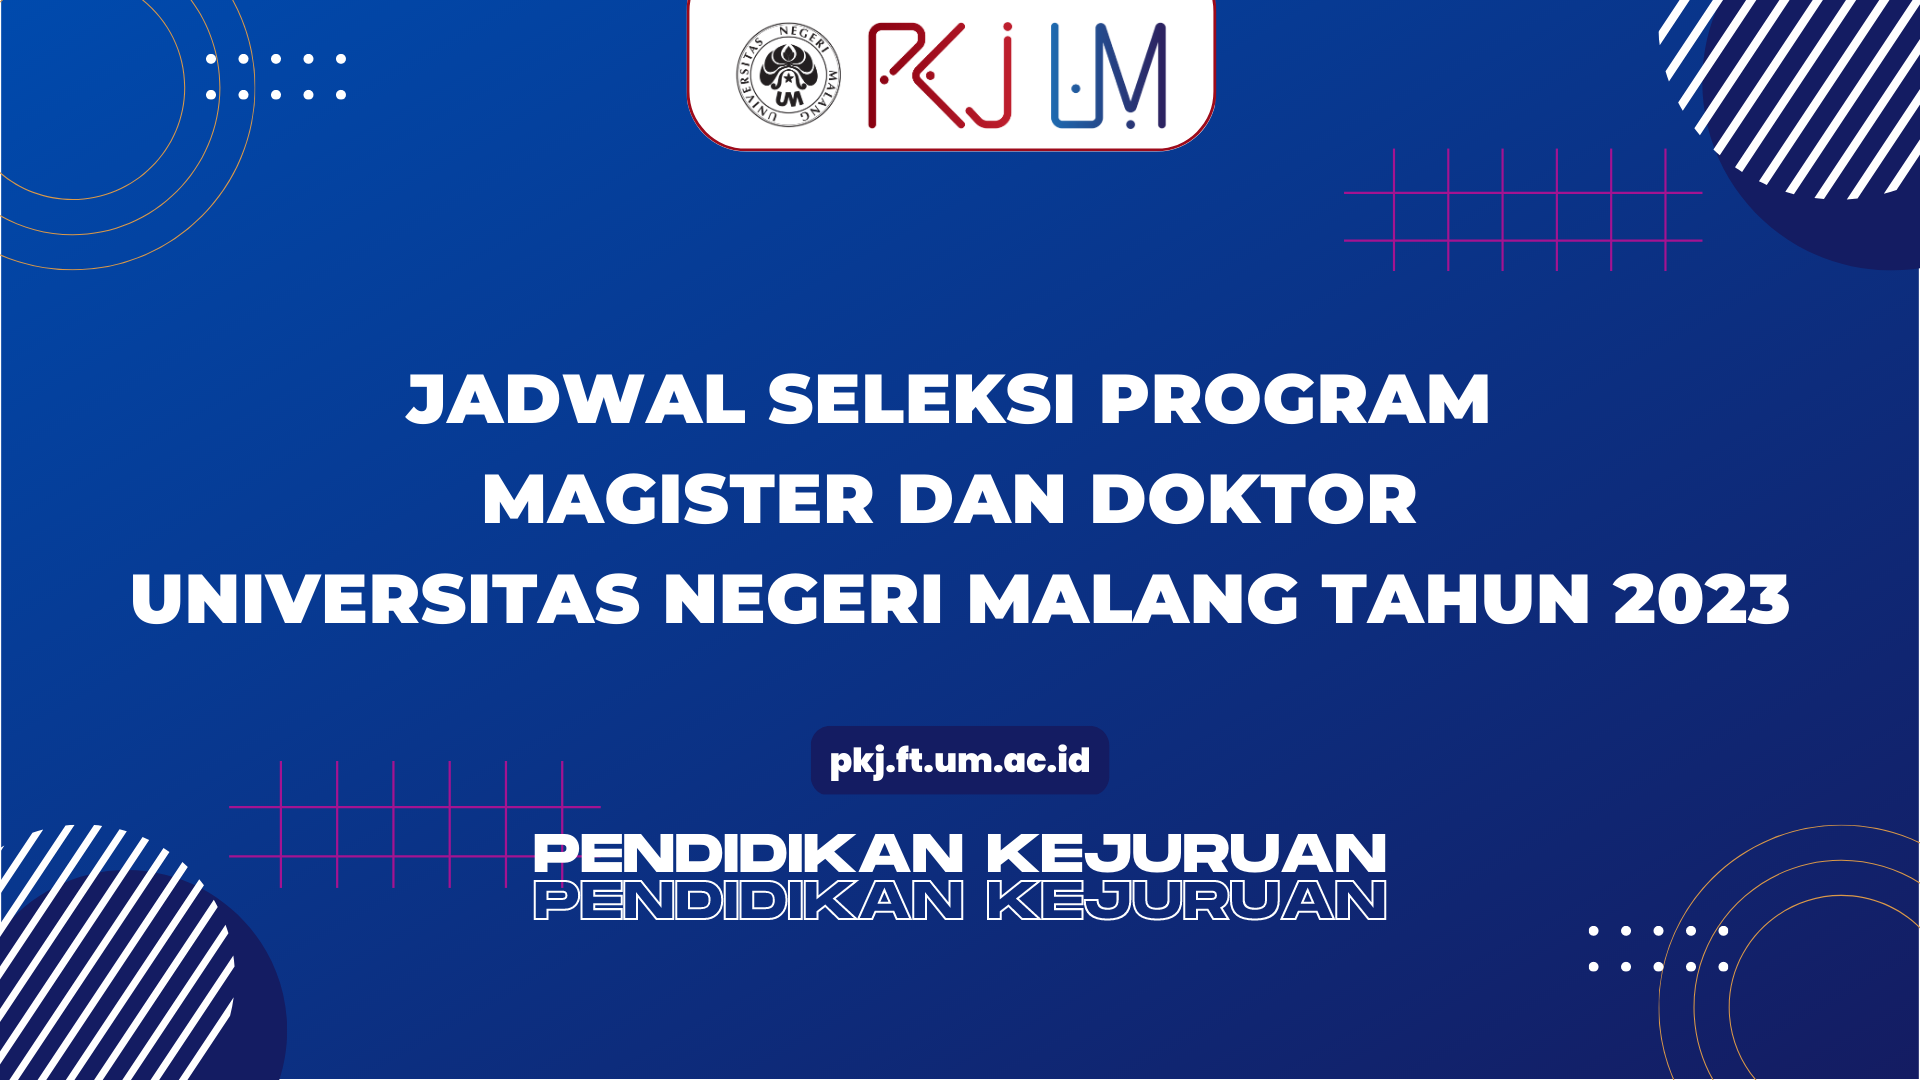 Jadwal Seleksi Program Magister dan Doktor Universitas Negeri Malang Tahun 2023